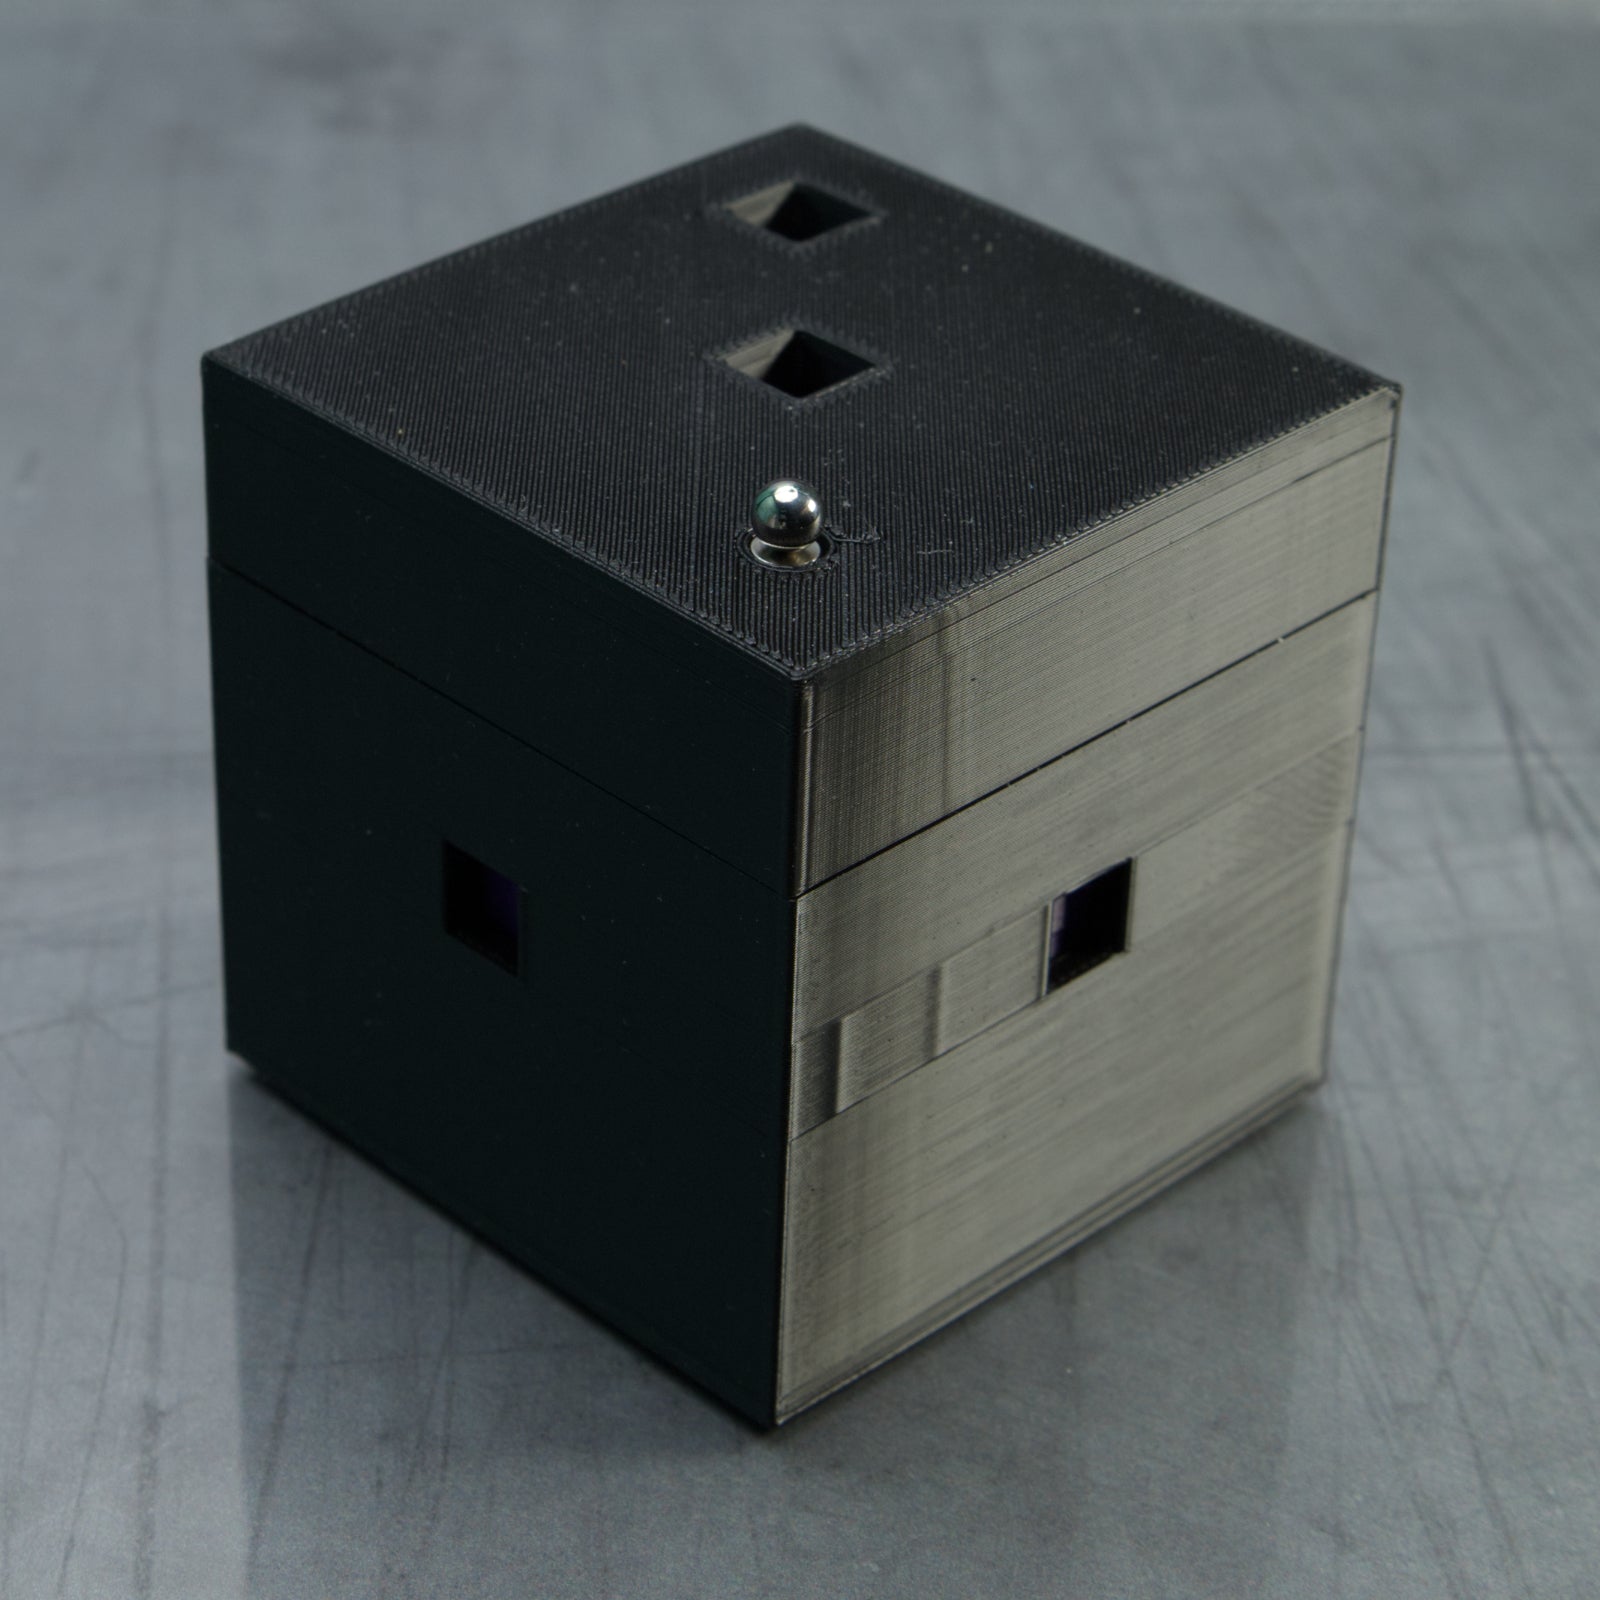 Labyrinth Cube - Plus Four - Level 8 - PuzzledByPiker